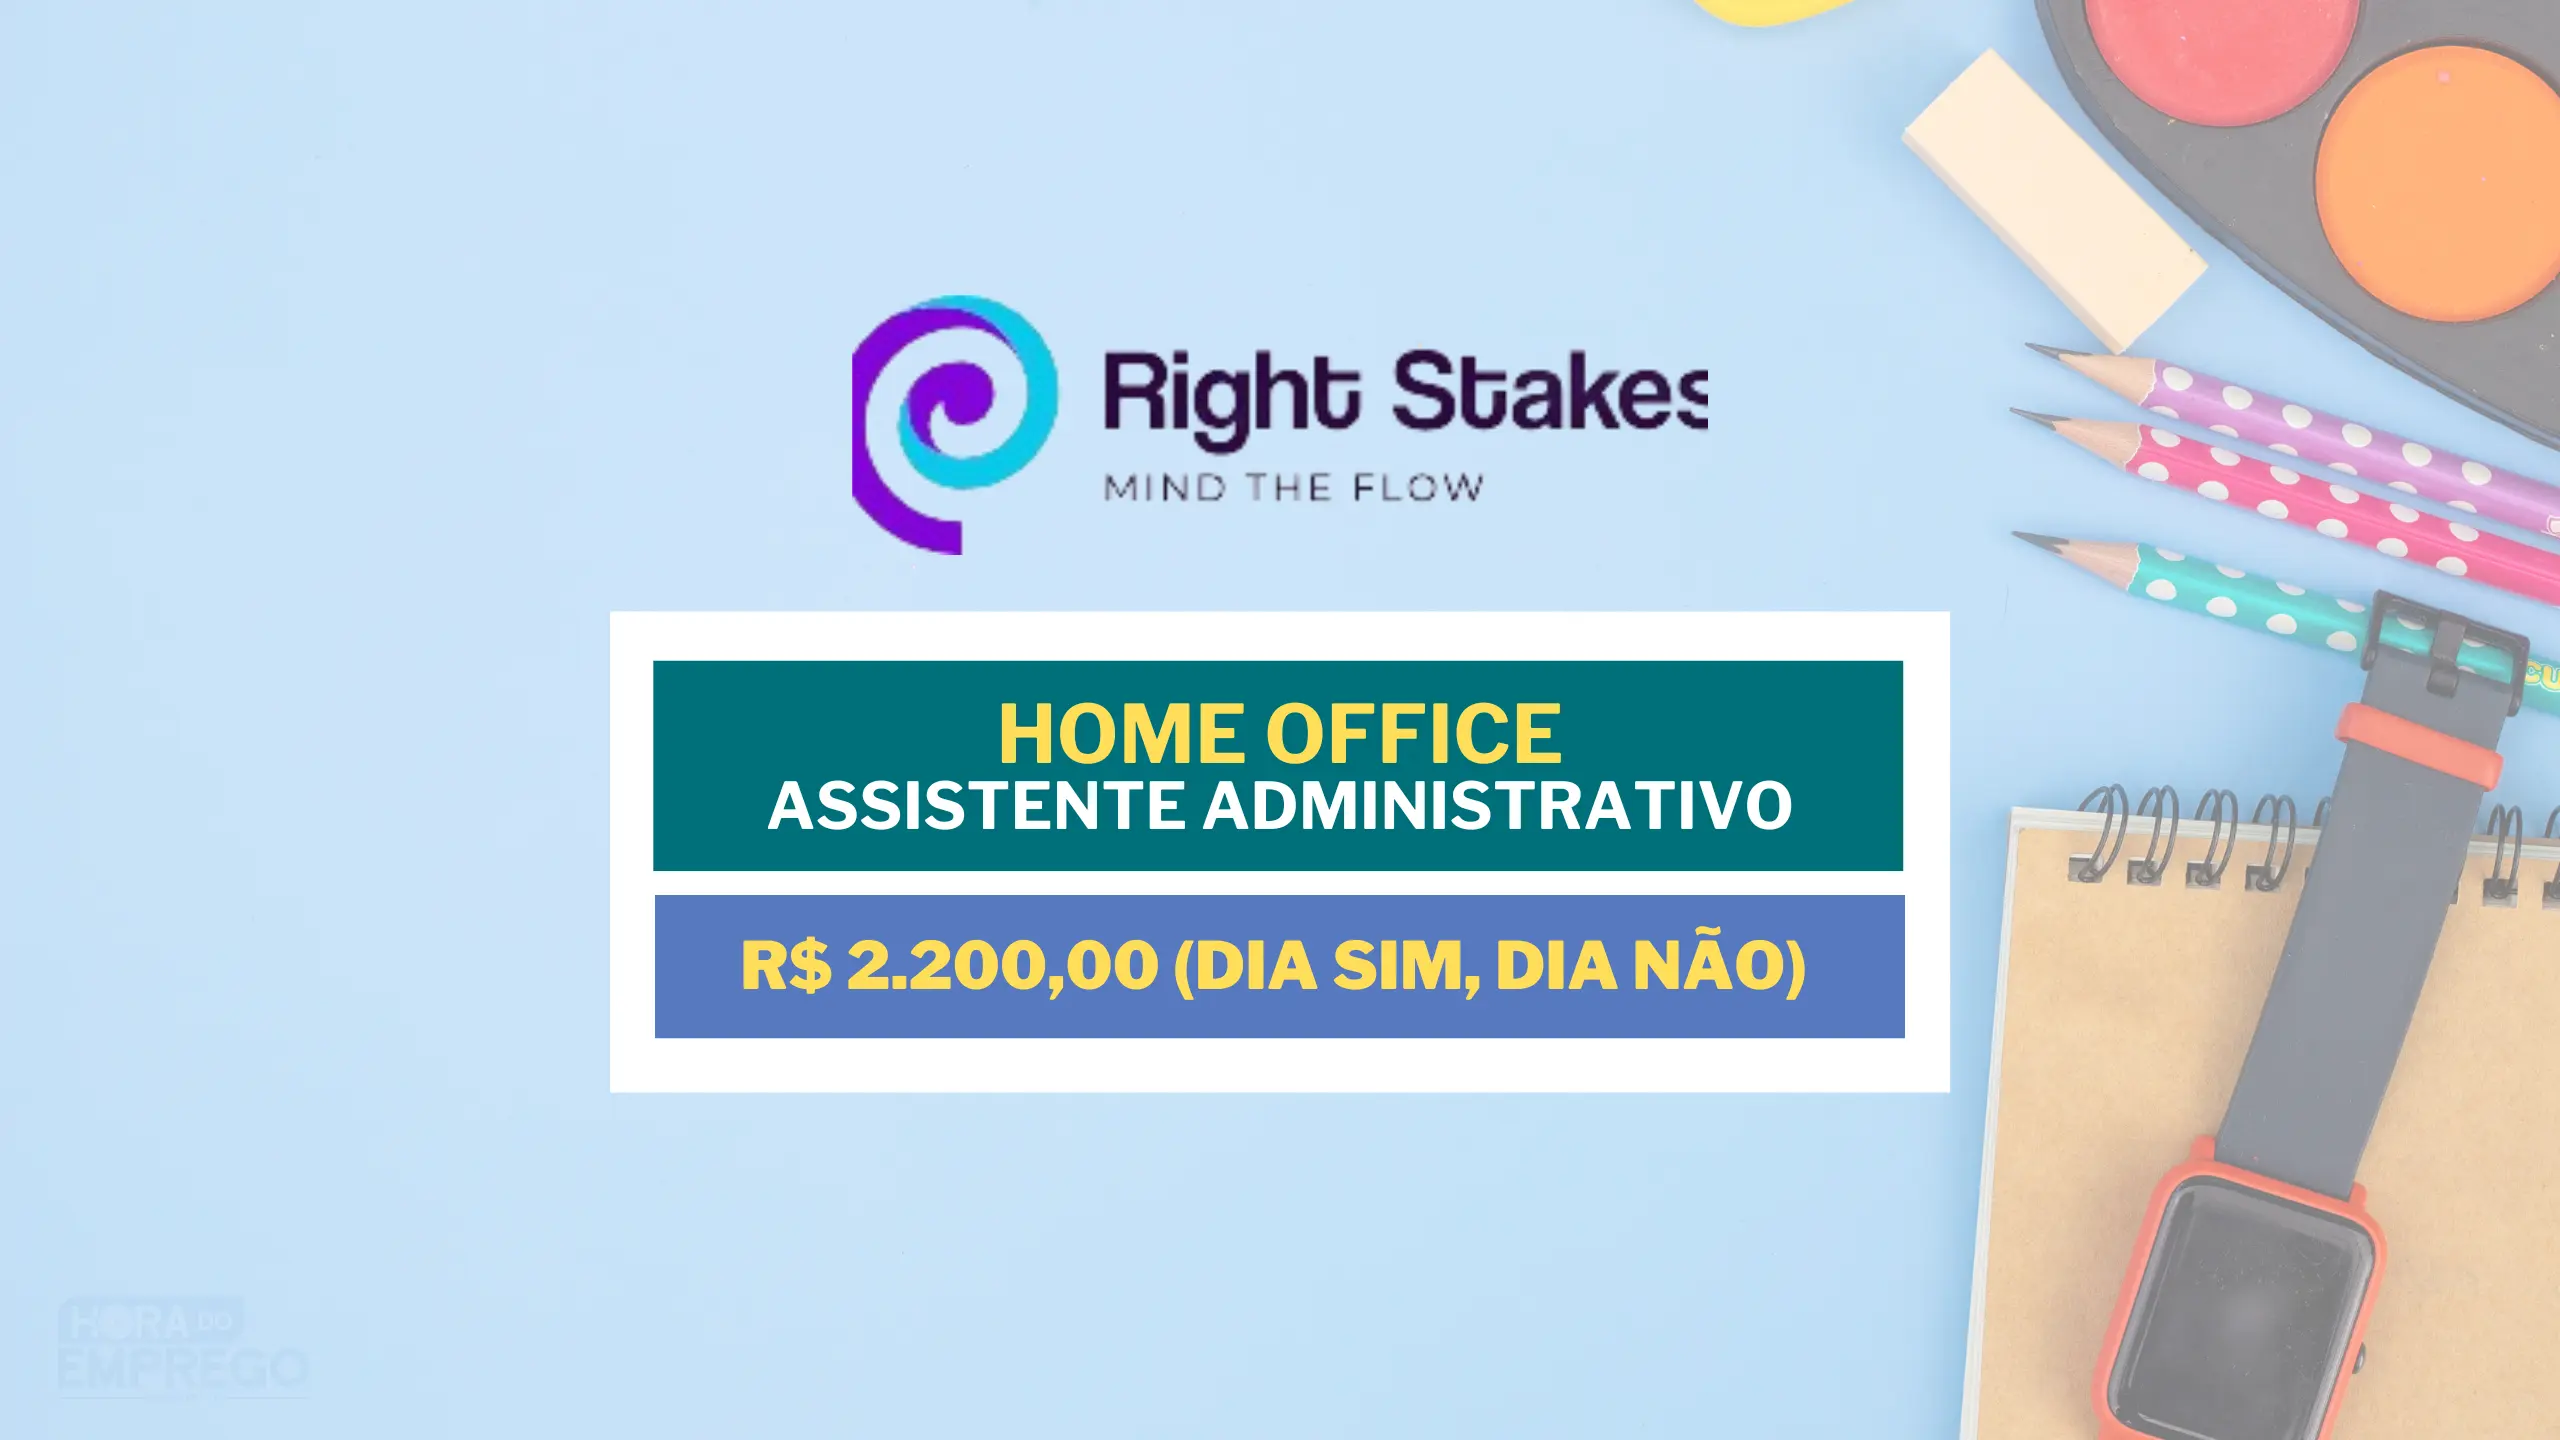 Right Stakes abre vagas HOME OFFICE para 12×36 com salário de R$ 2.200,00 no caro de Assistente Administrativo